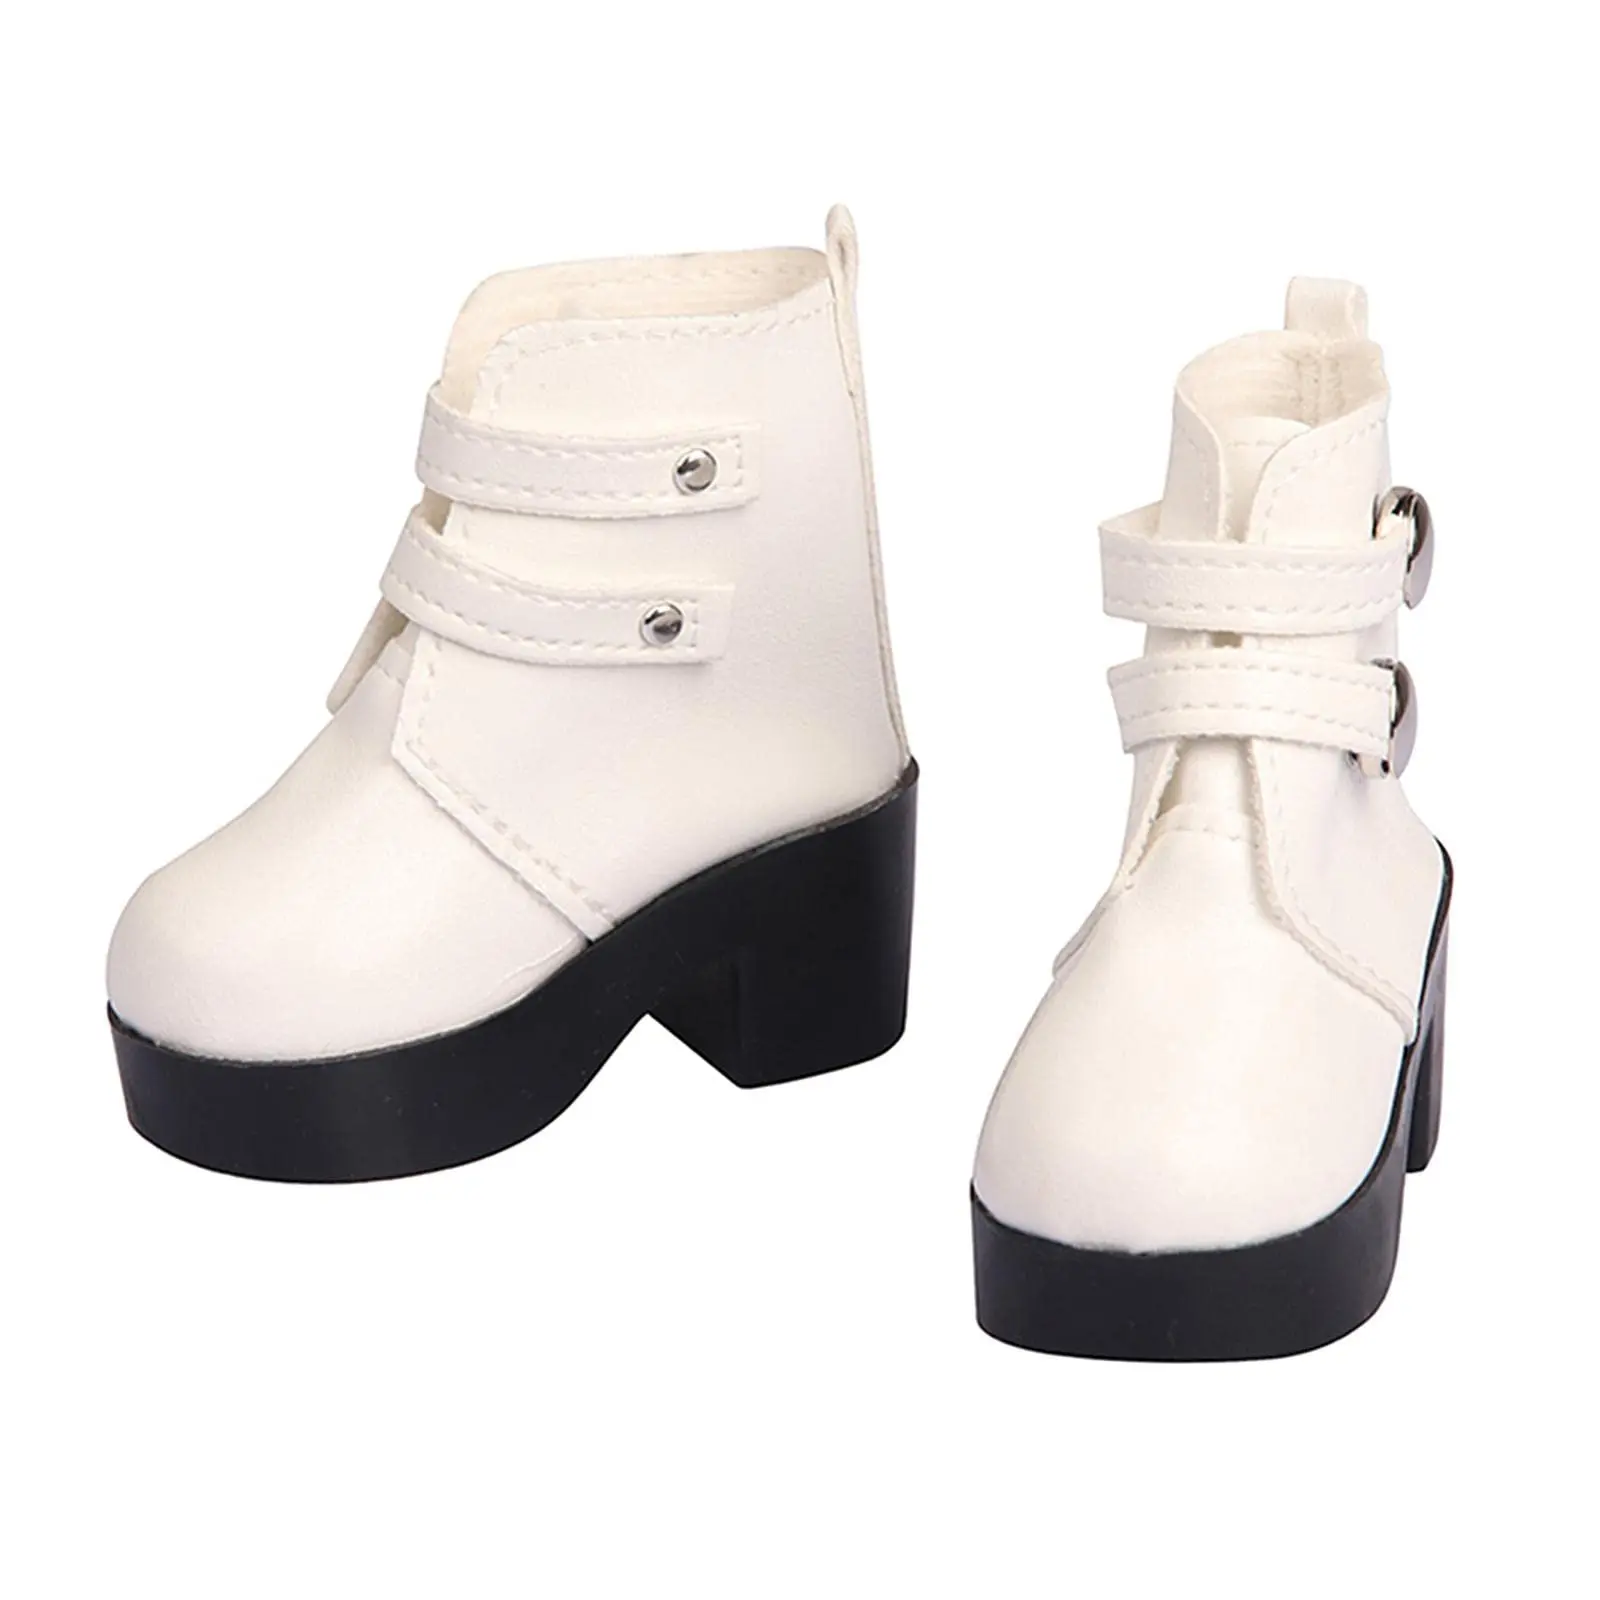 Мода 18 дюймов куклы ботинки на Плоском Каблуке обувь классические игрушки аксессуары американская девочка